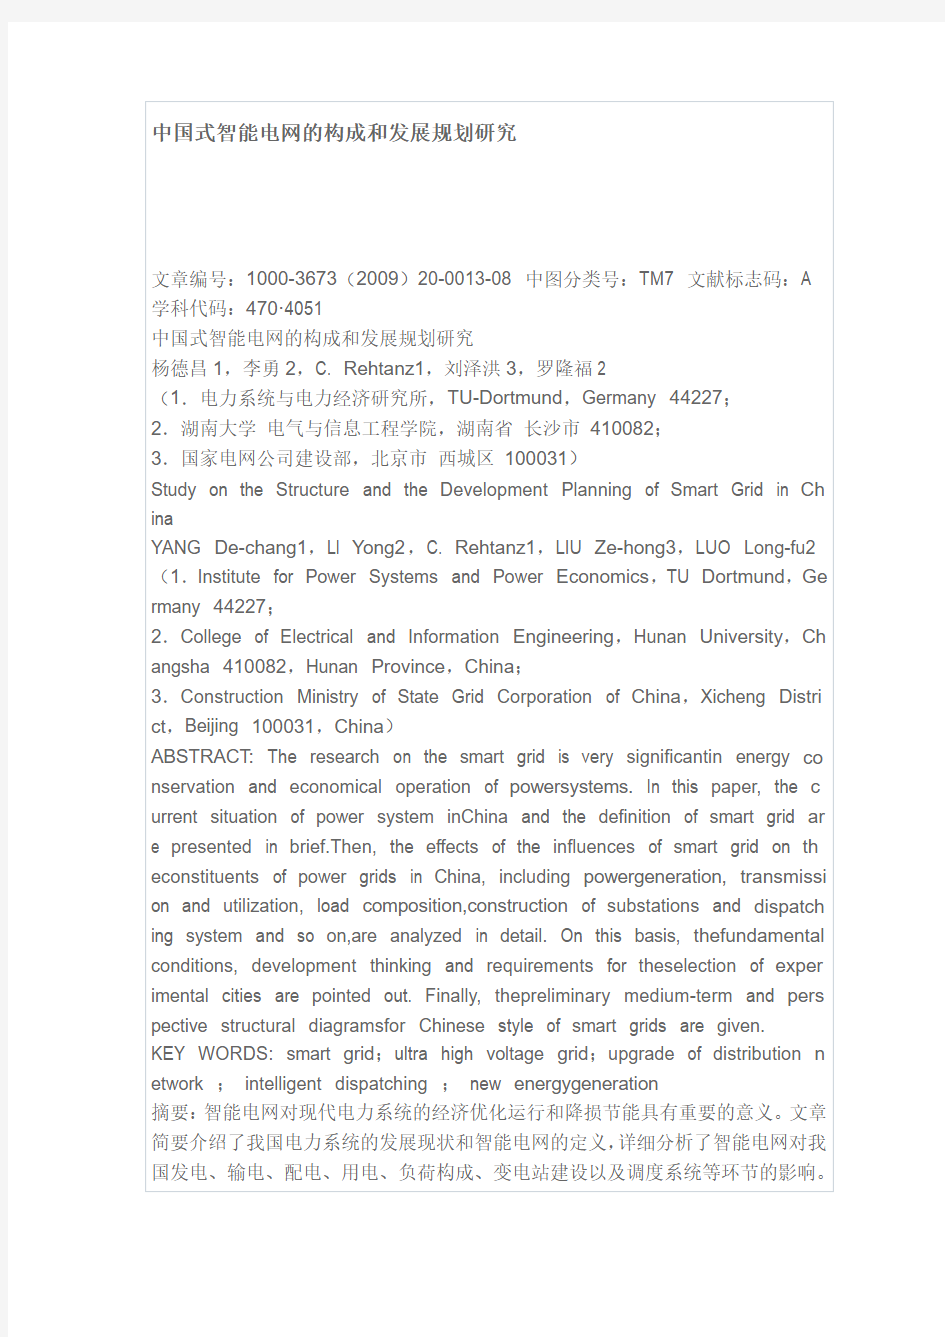 中国式智能电网的构成和发展规划研究